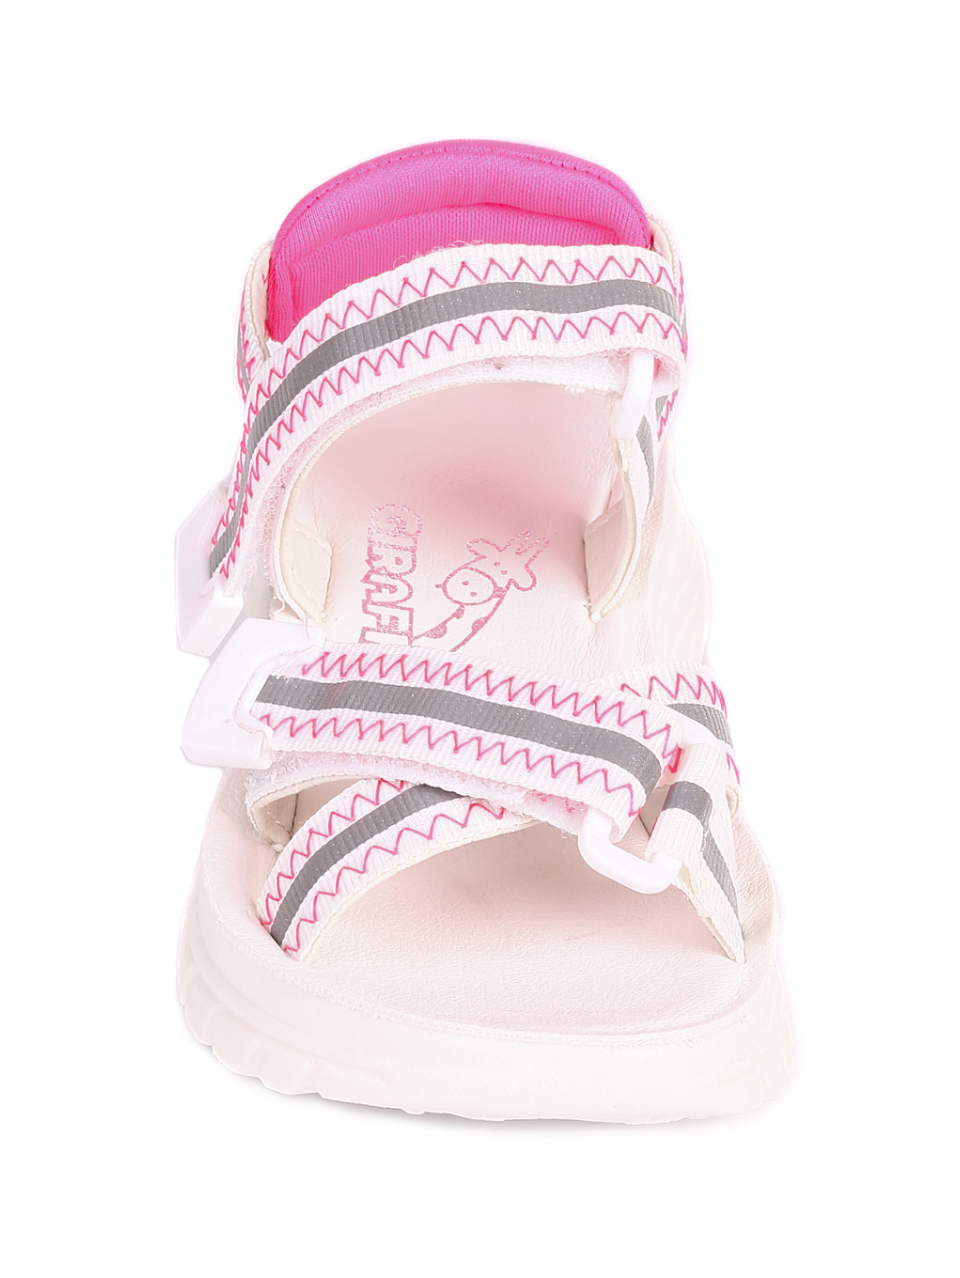 Ежедневни детски сандали в бяло и розово 17F-20316 peach